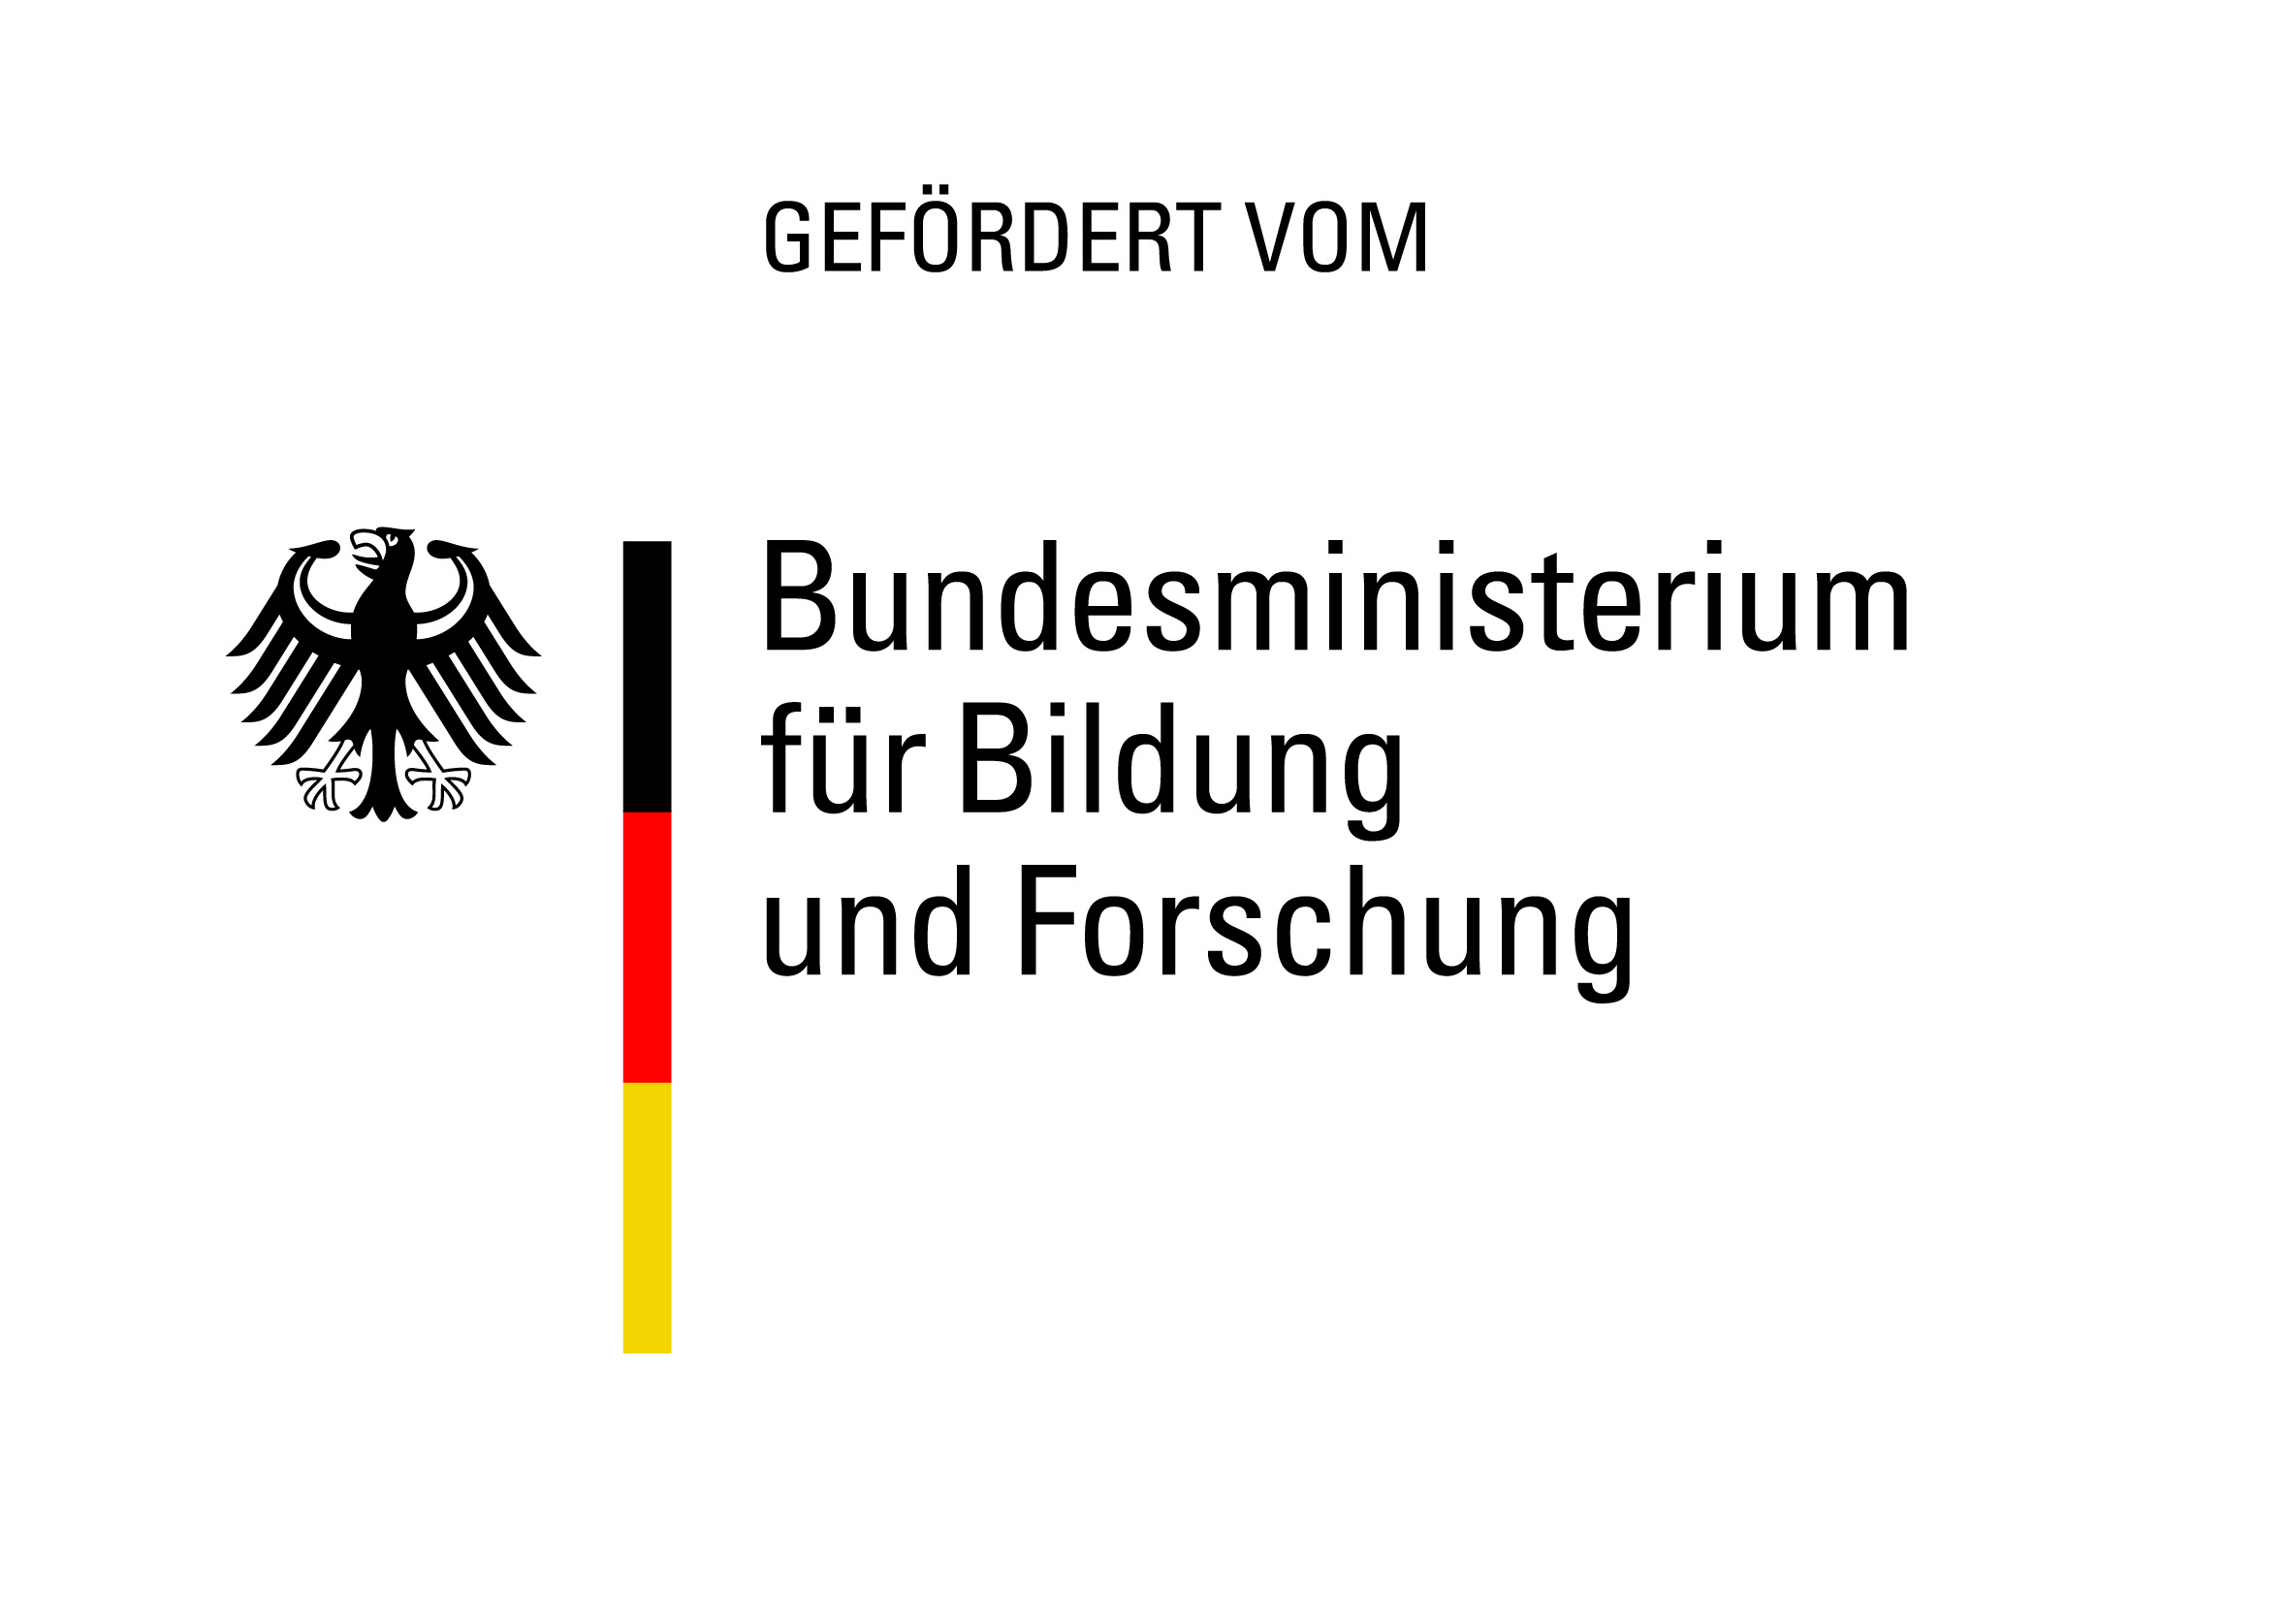 Bundesministerium für Bildung und Forschung Logo